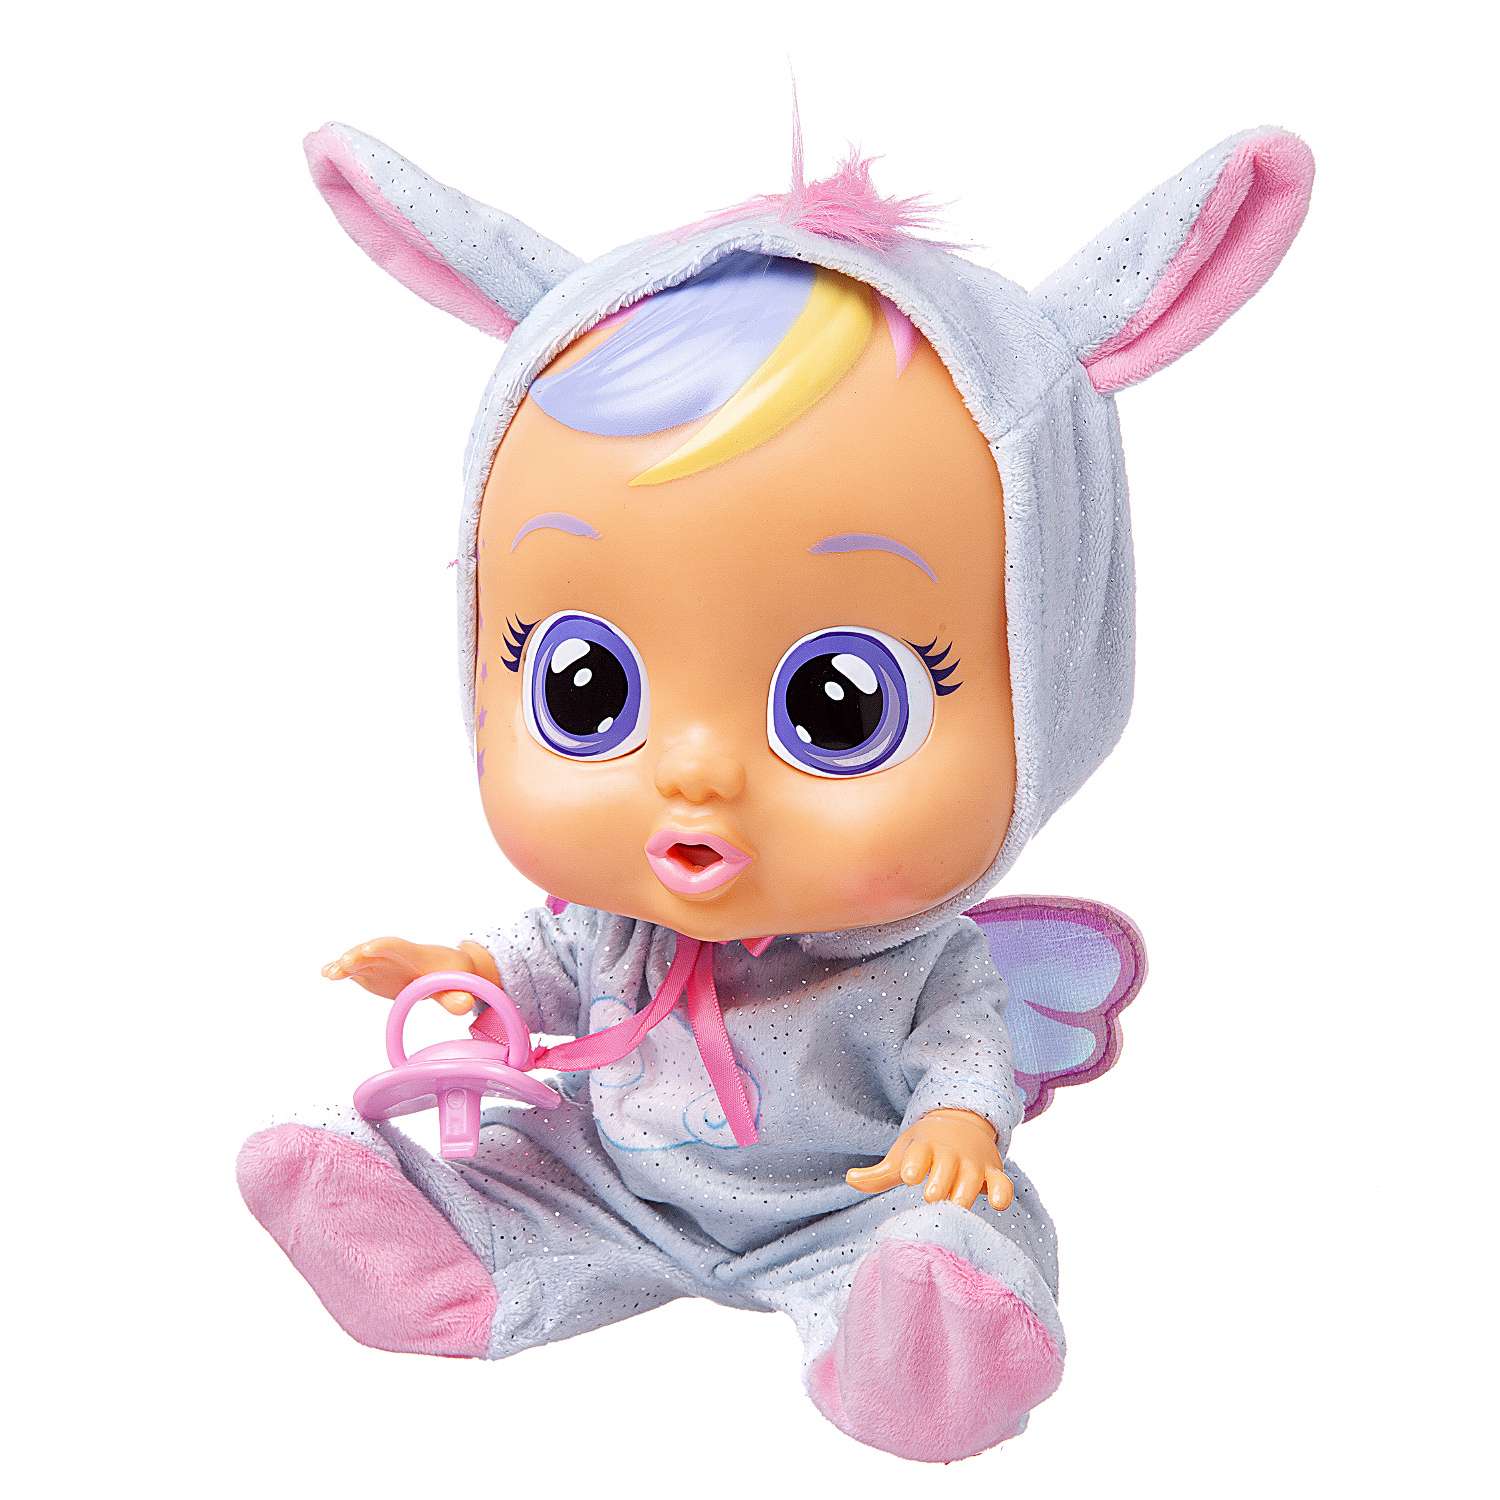 Кукла IMC Toys Плачущий младенец Jenna 31 см 91764 - фото 1